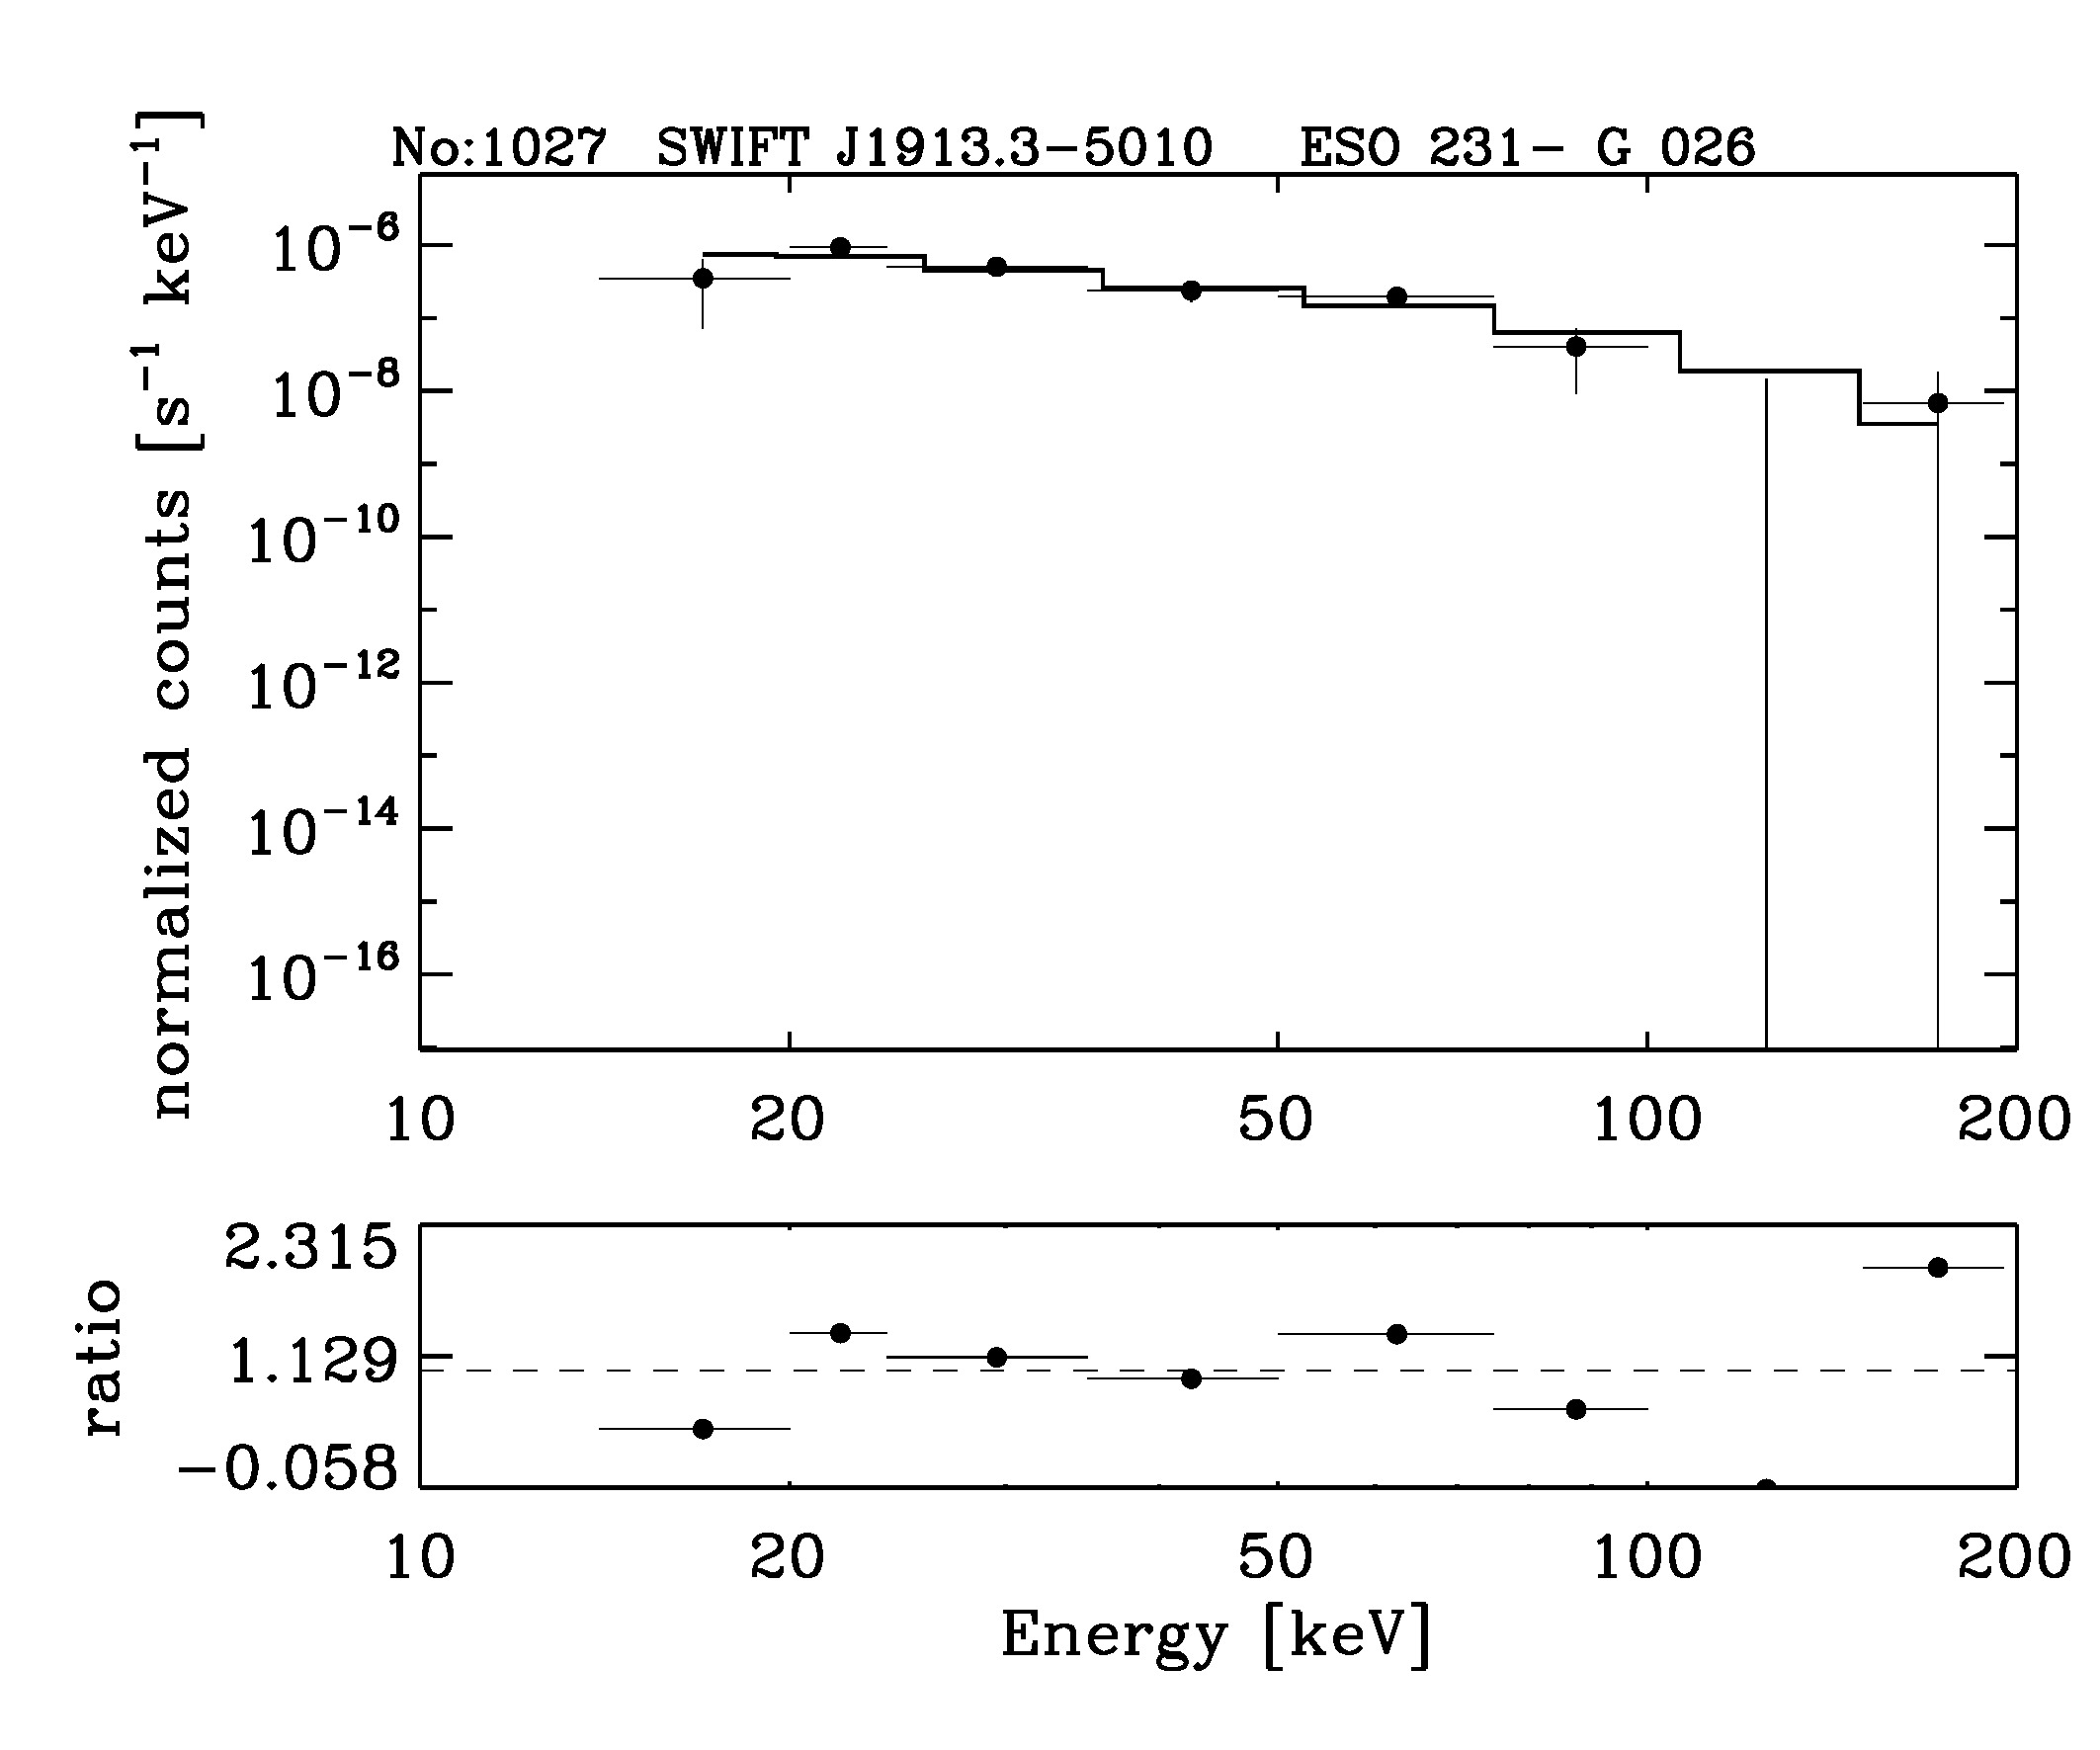 BAT Spectrum for SWIFT J1913.3-5010